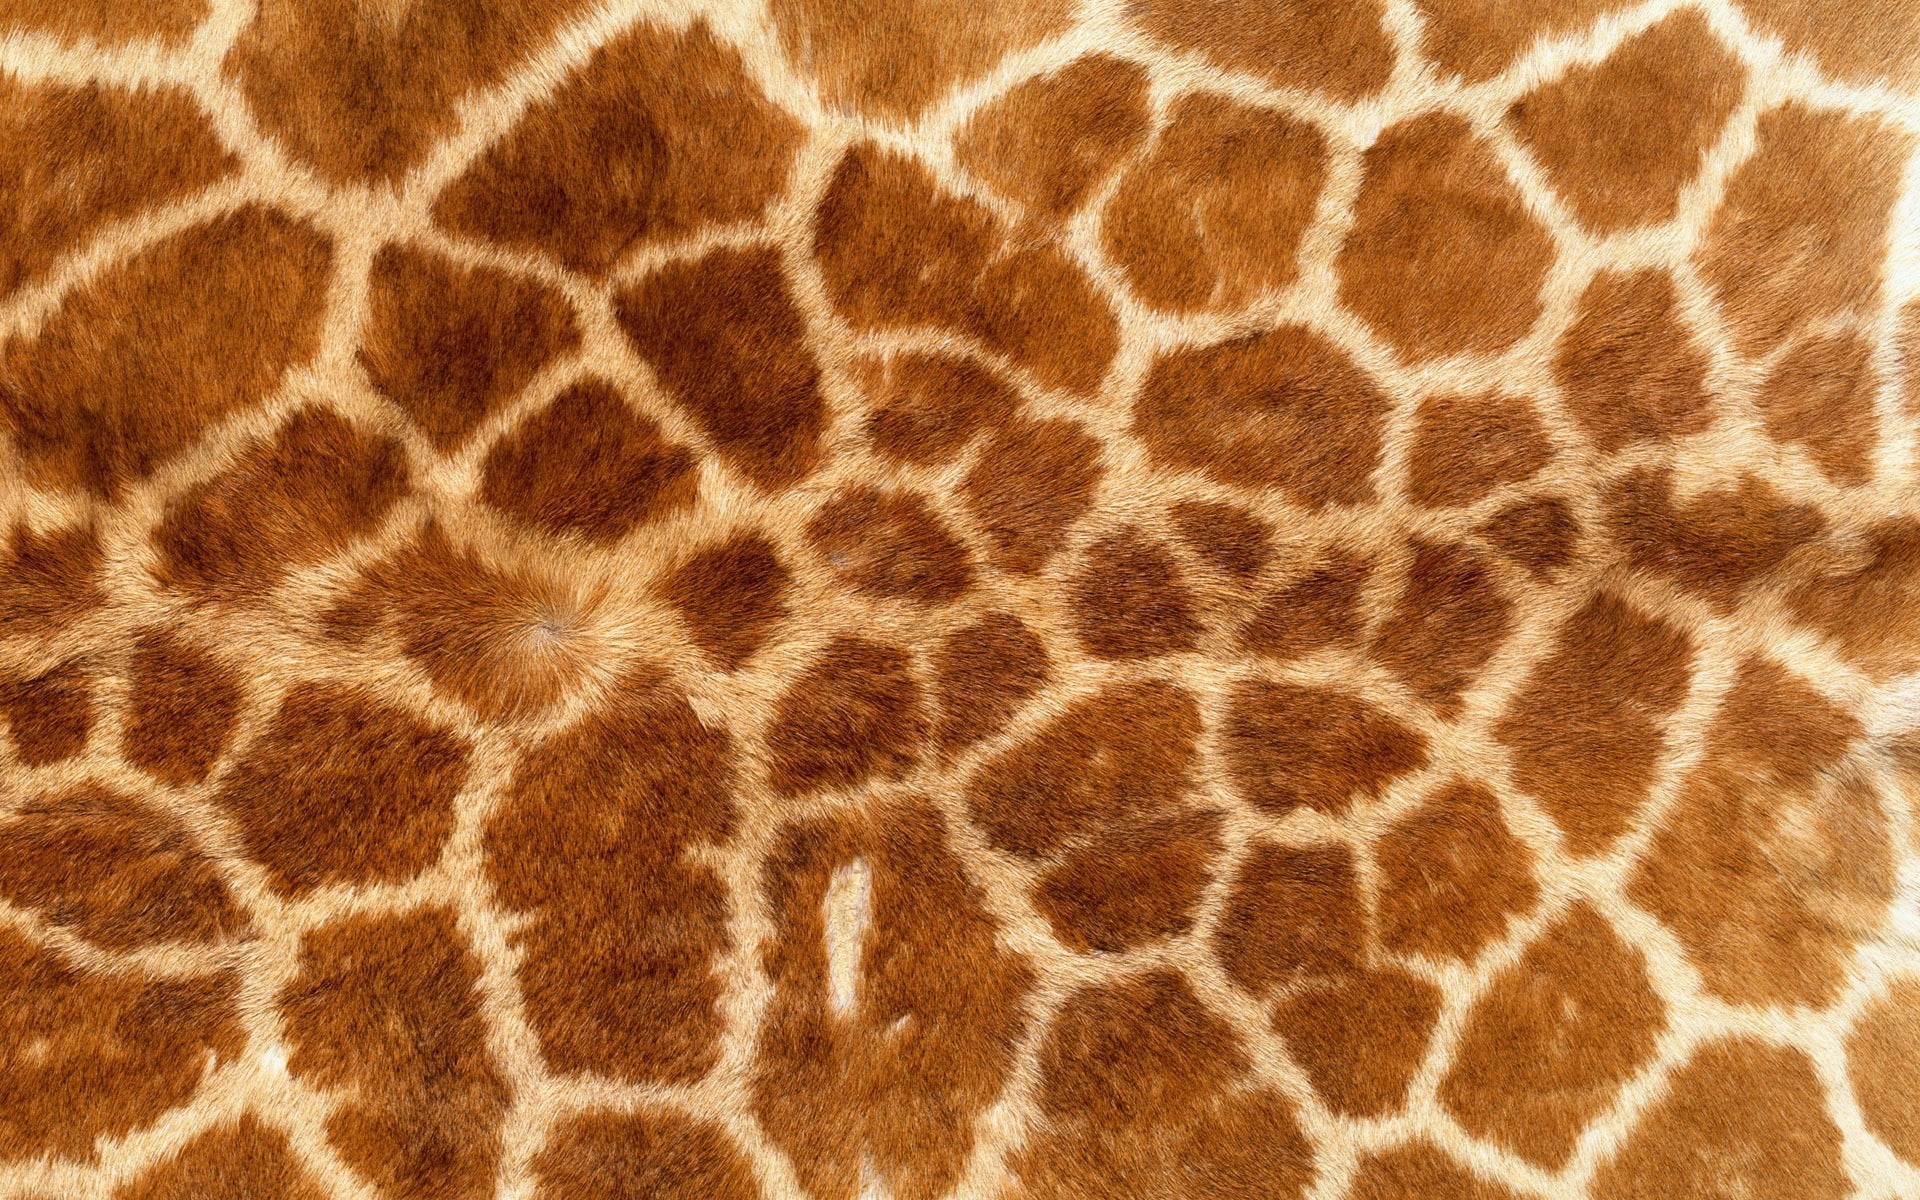 Giraffe Texture - HD Wallpaper 